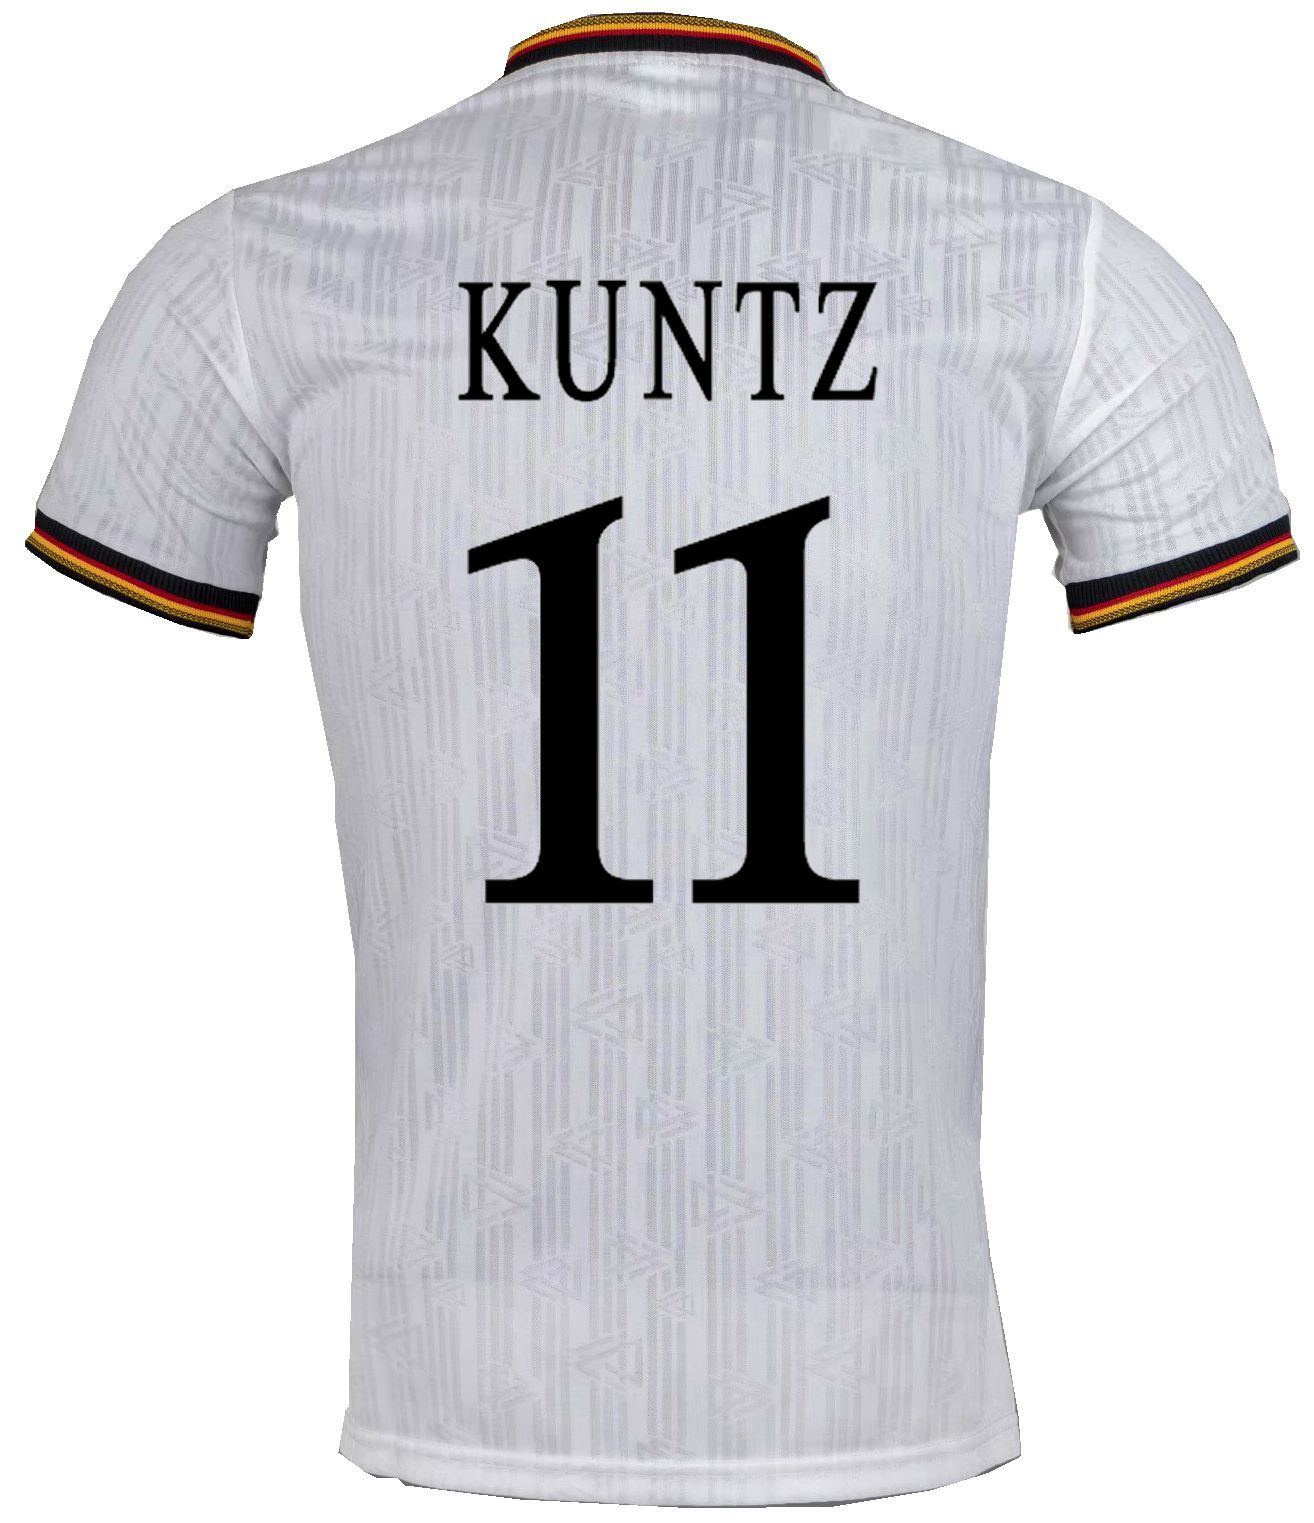 Kuntz 11